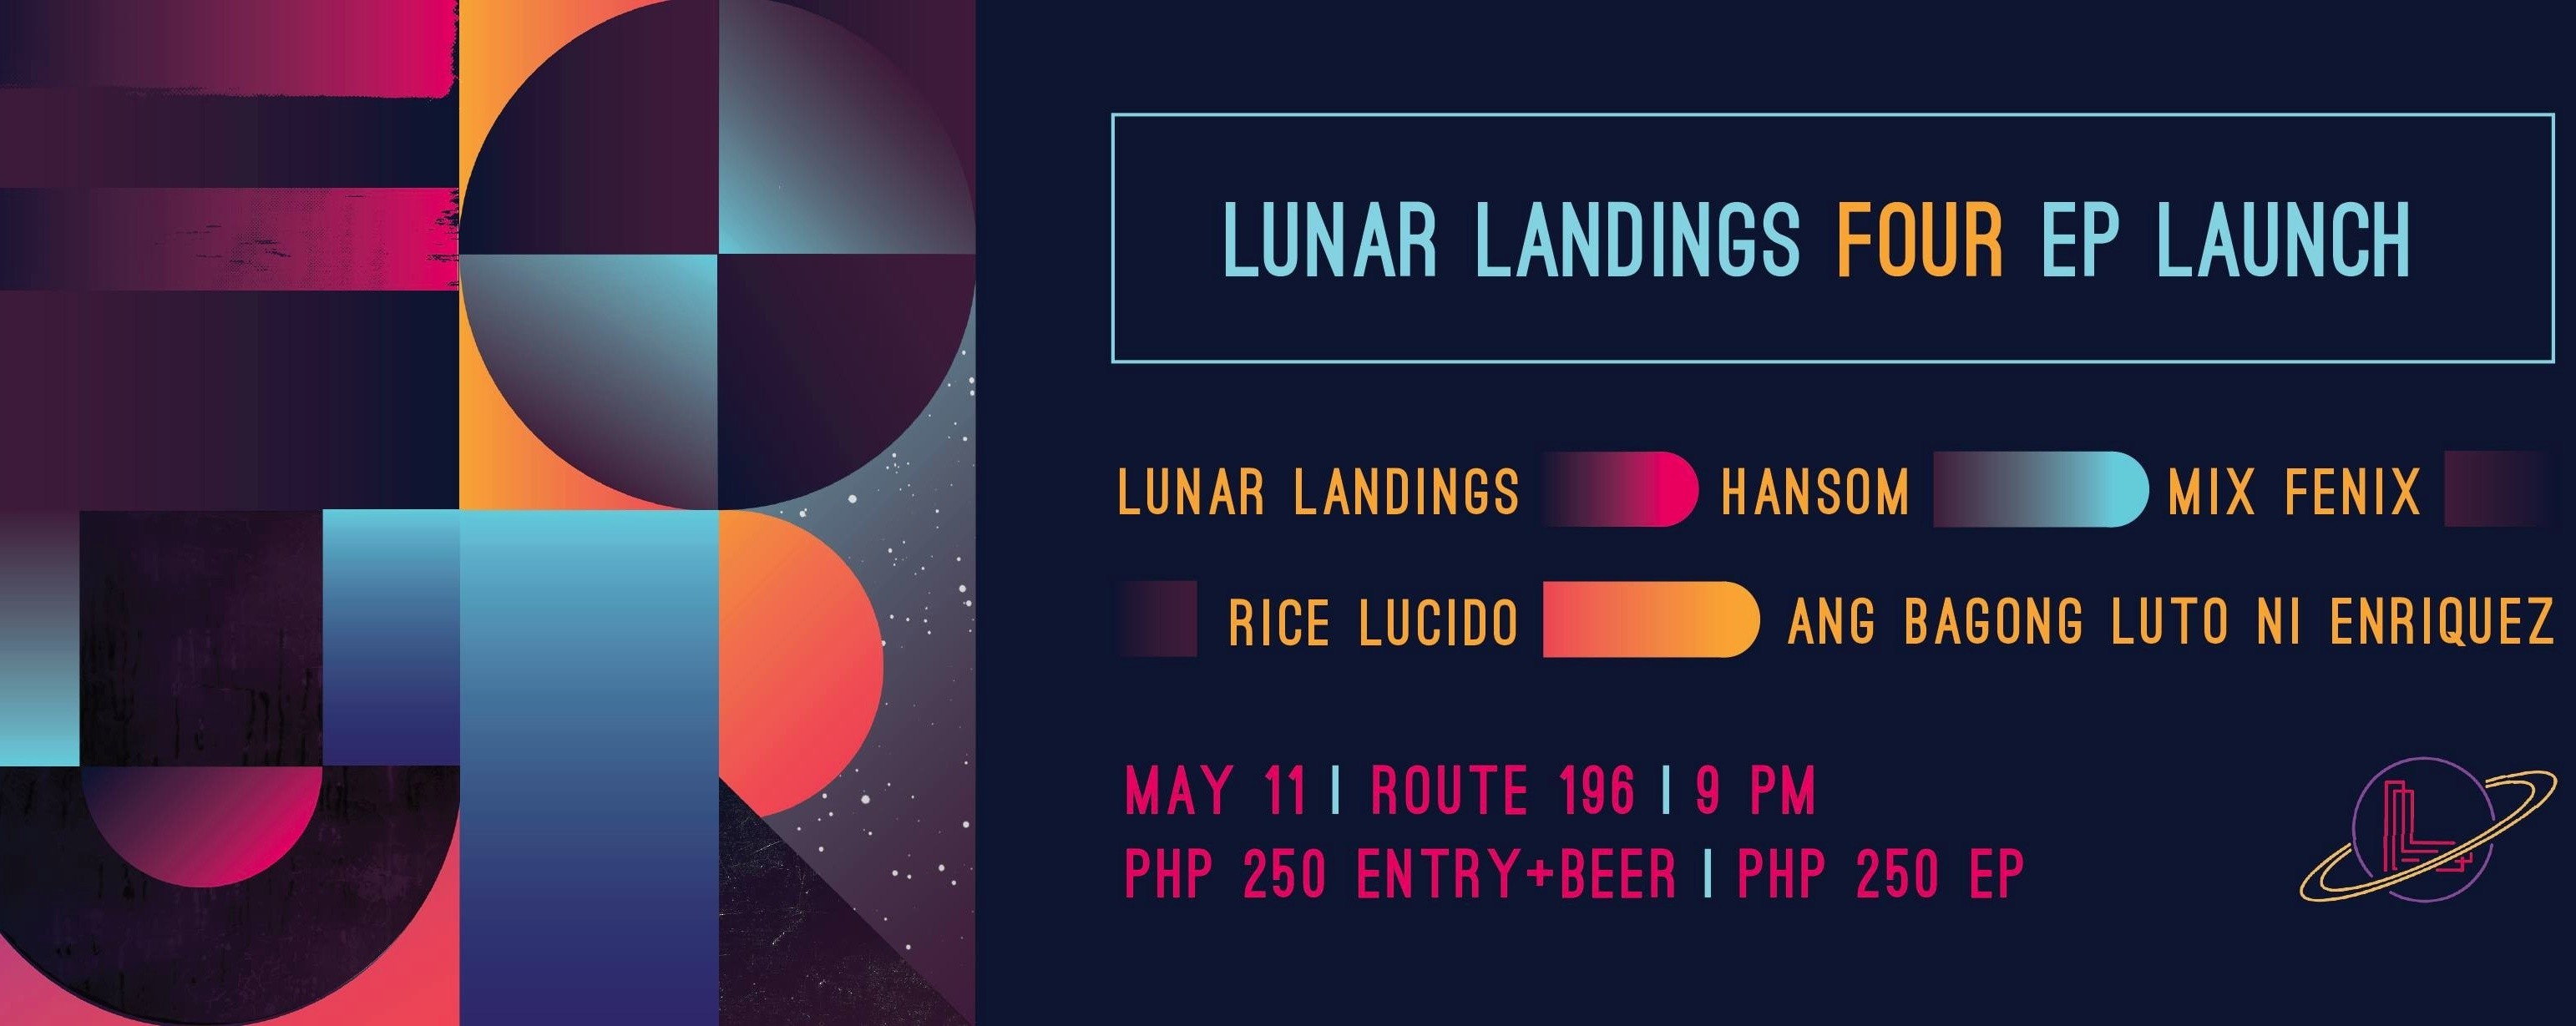 FOUR EP Launch - Lunar Landings